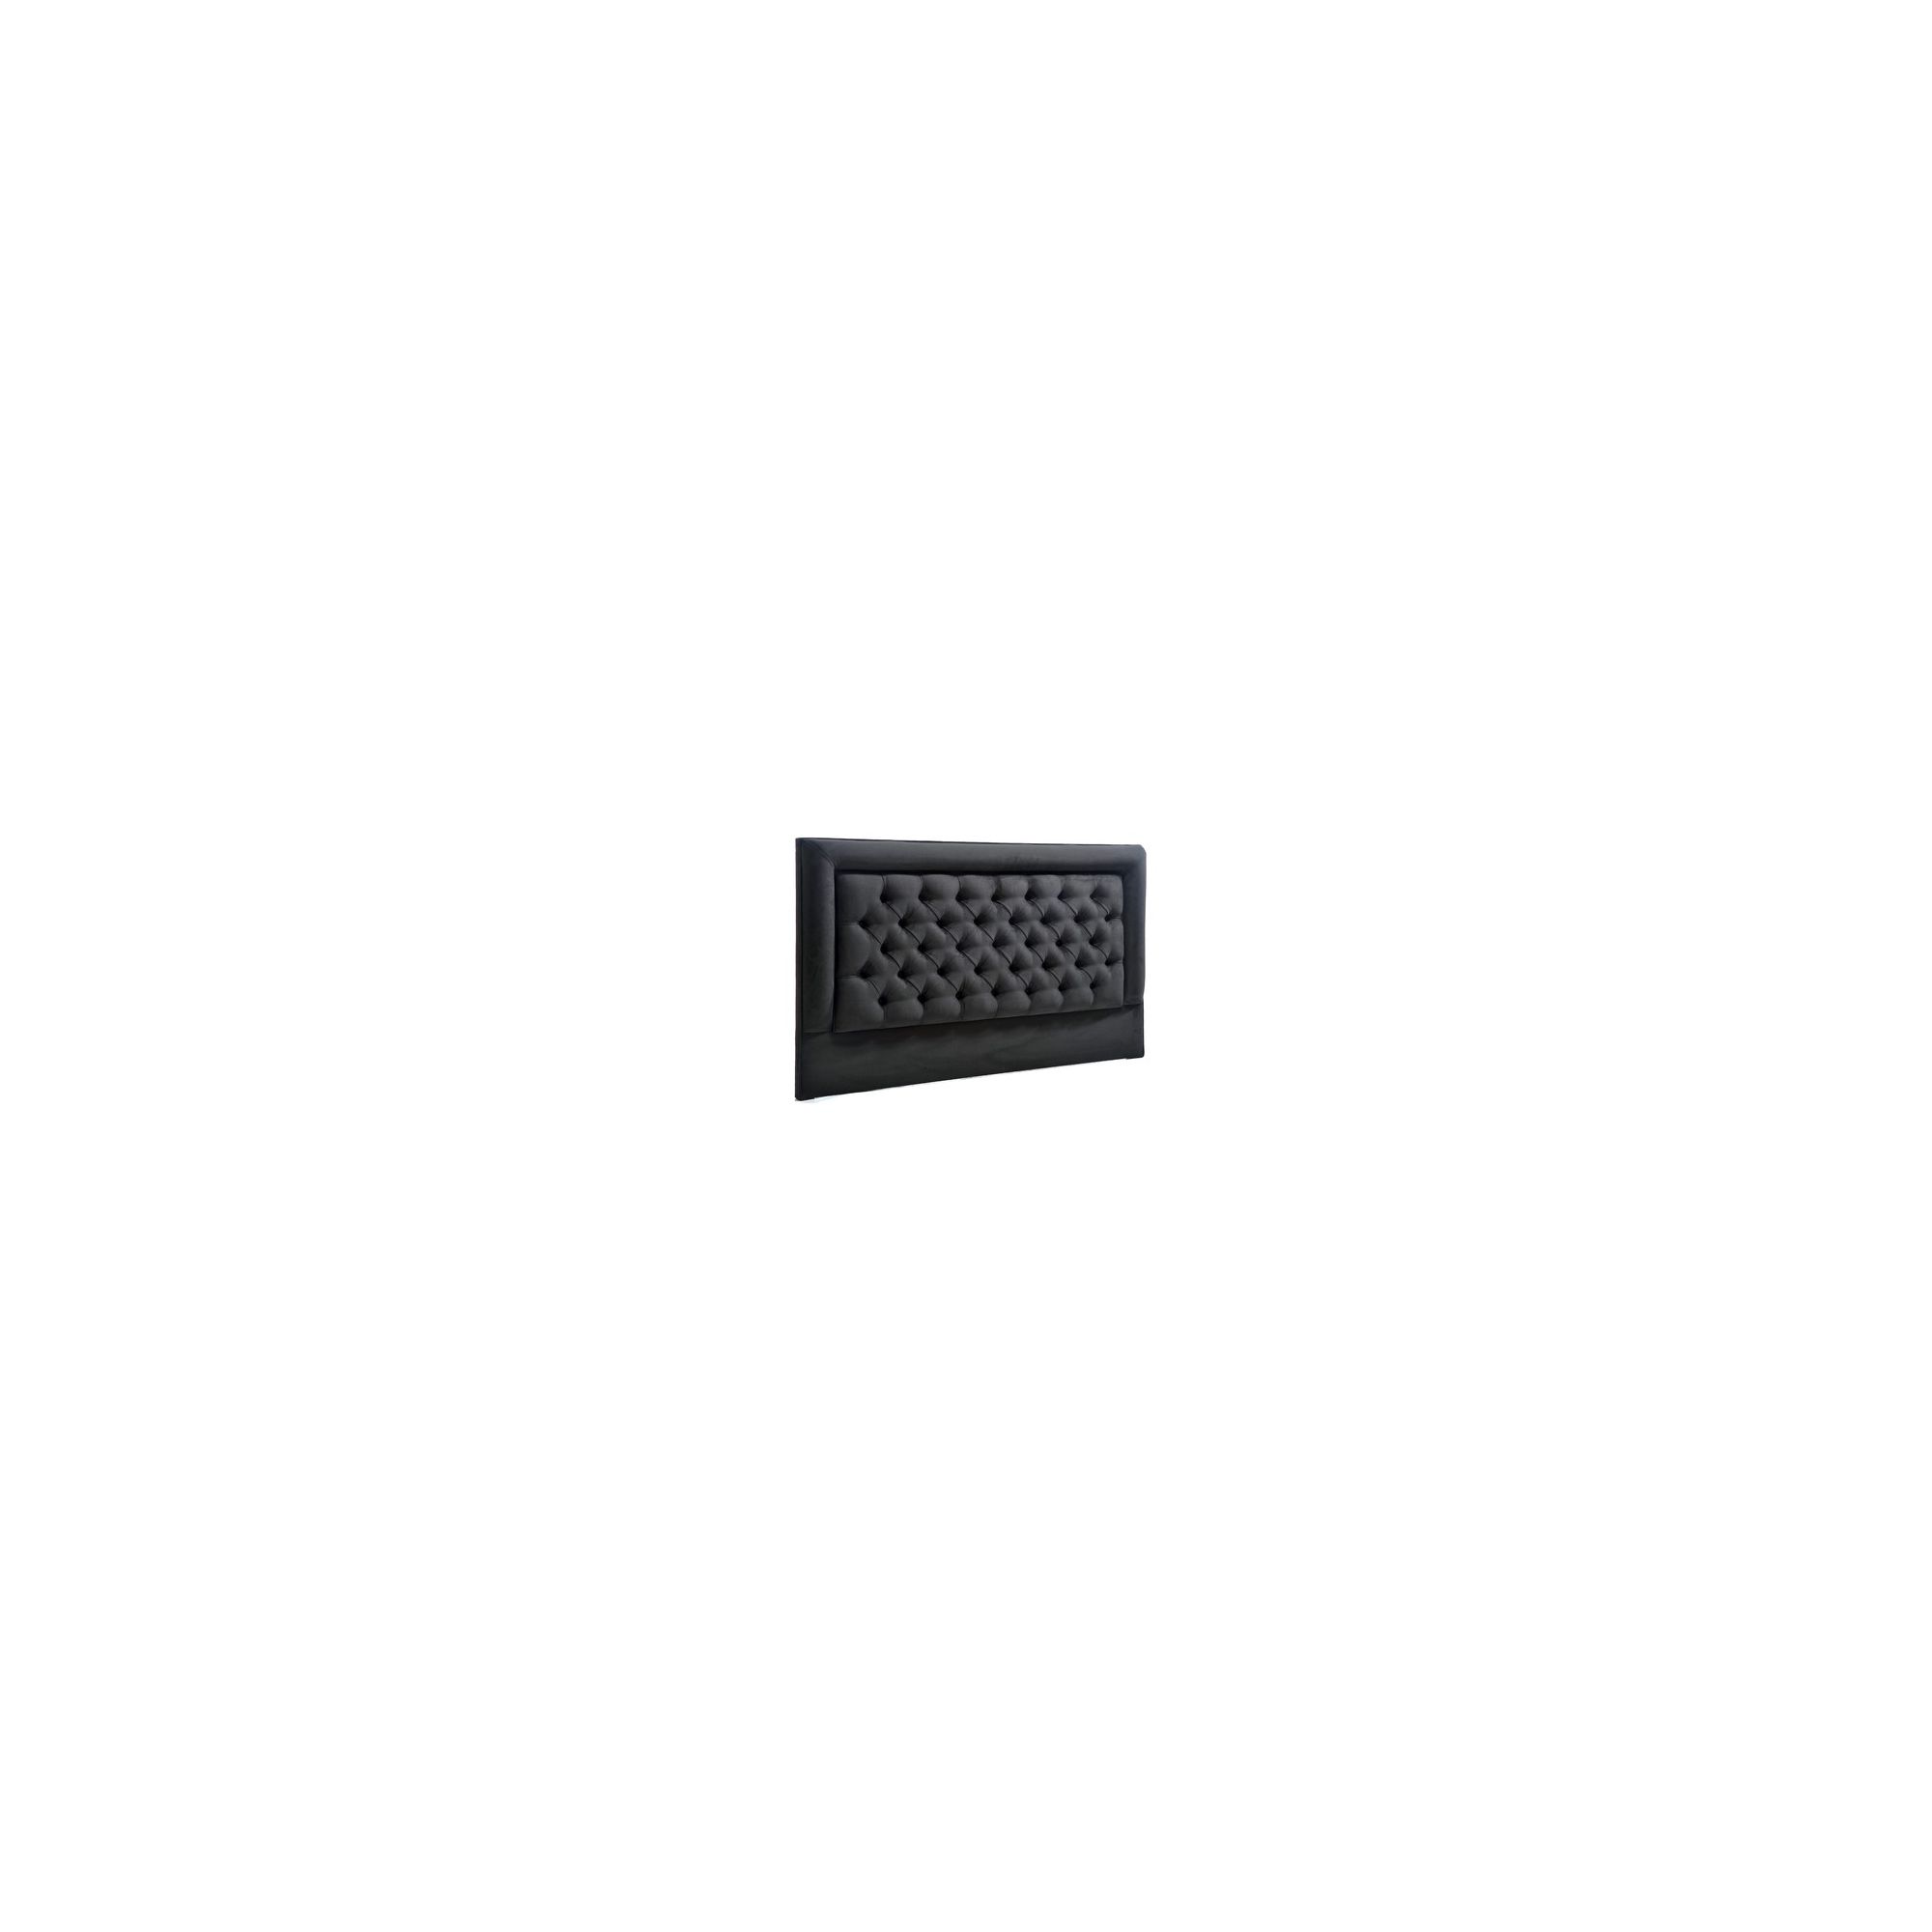 PC Upholstery Brasilia Headboard - Noir - 6' Super King at Tesco Direct